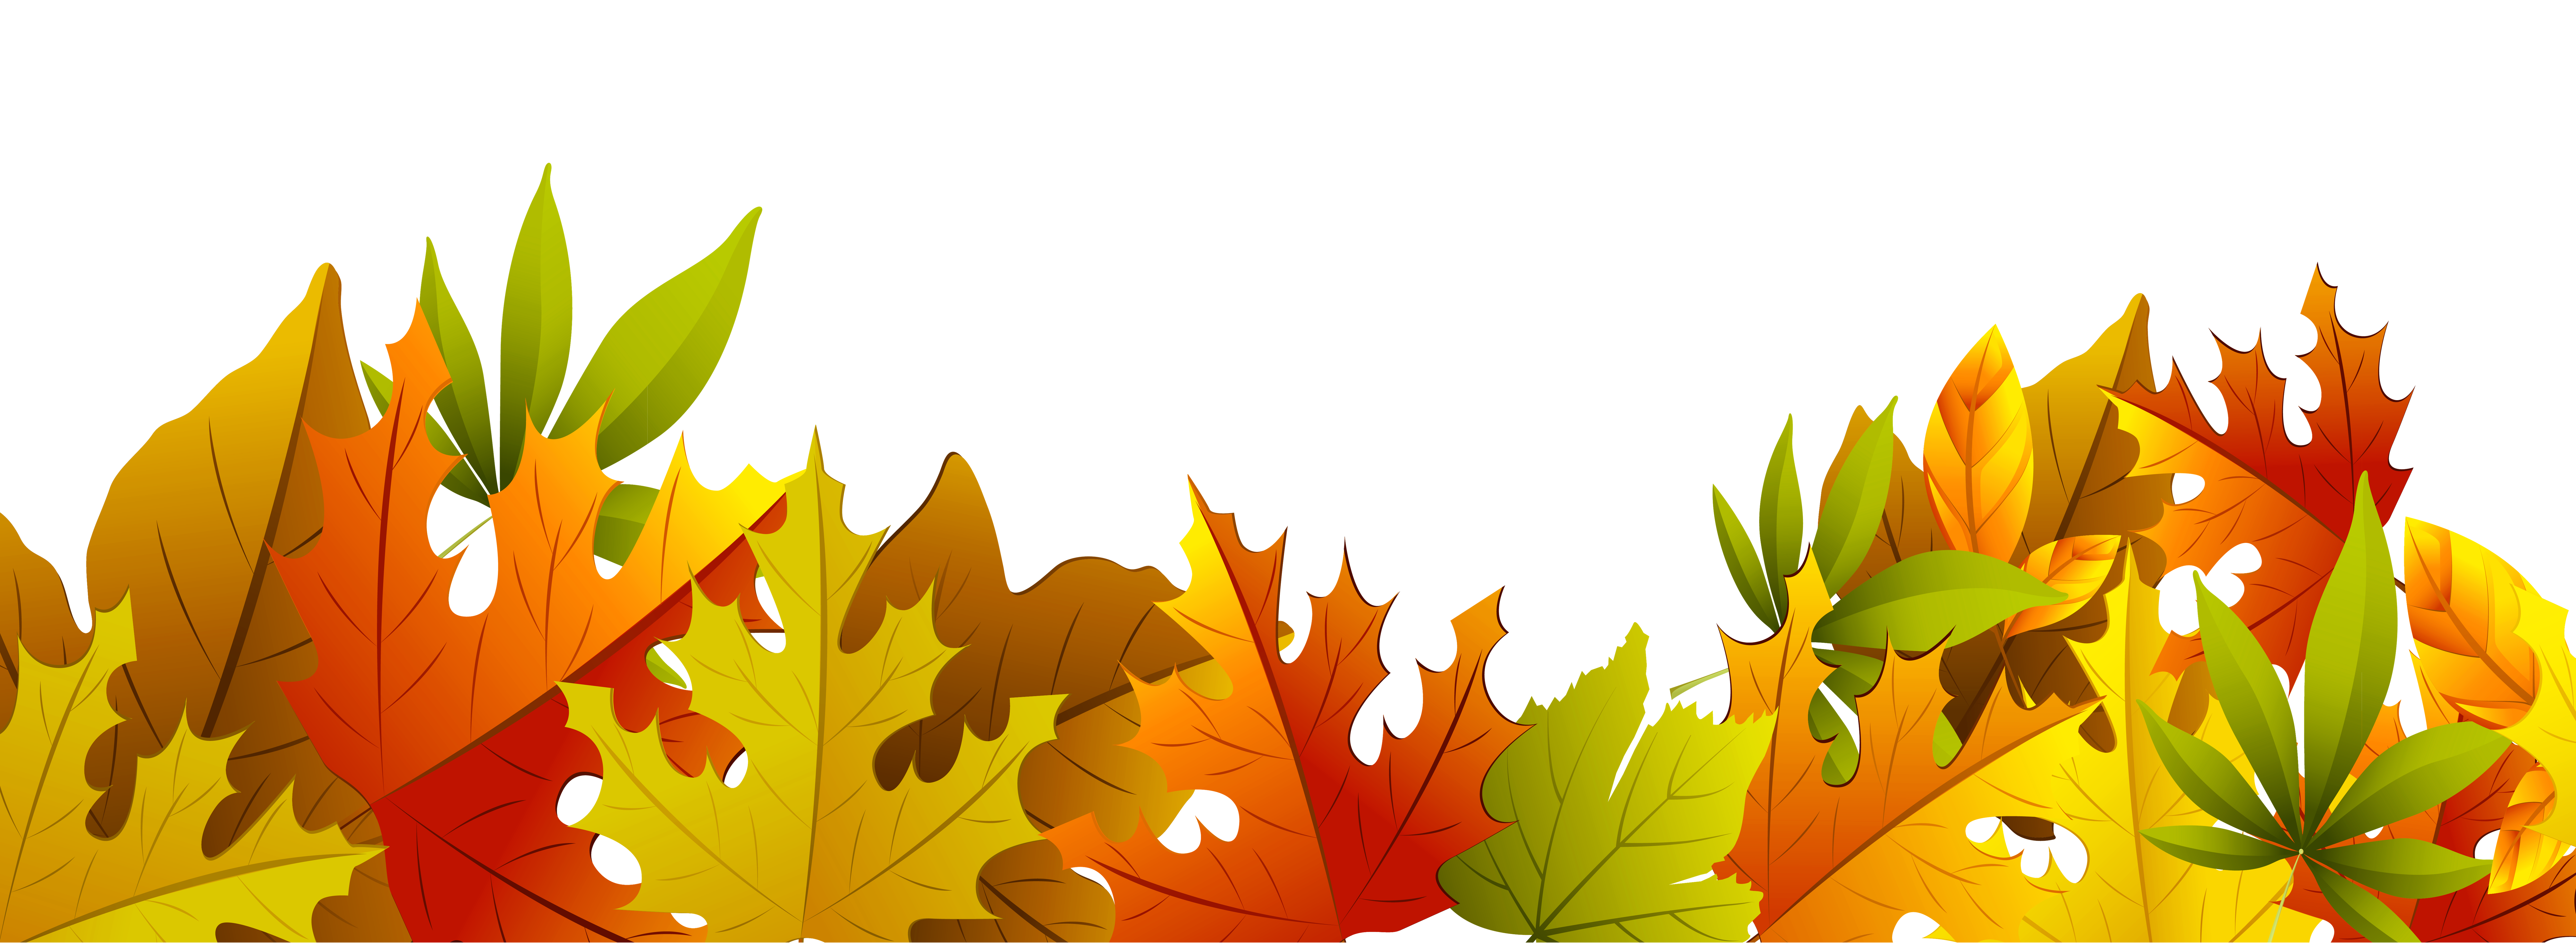 Decorative autumn leaves clipart